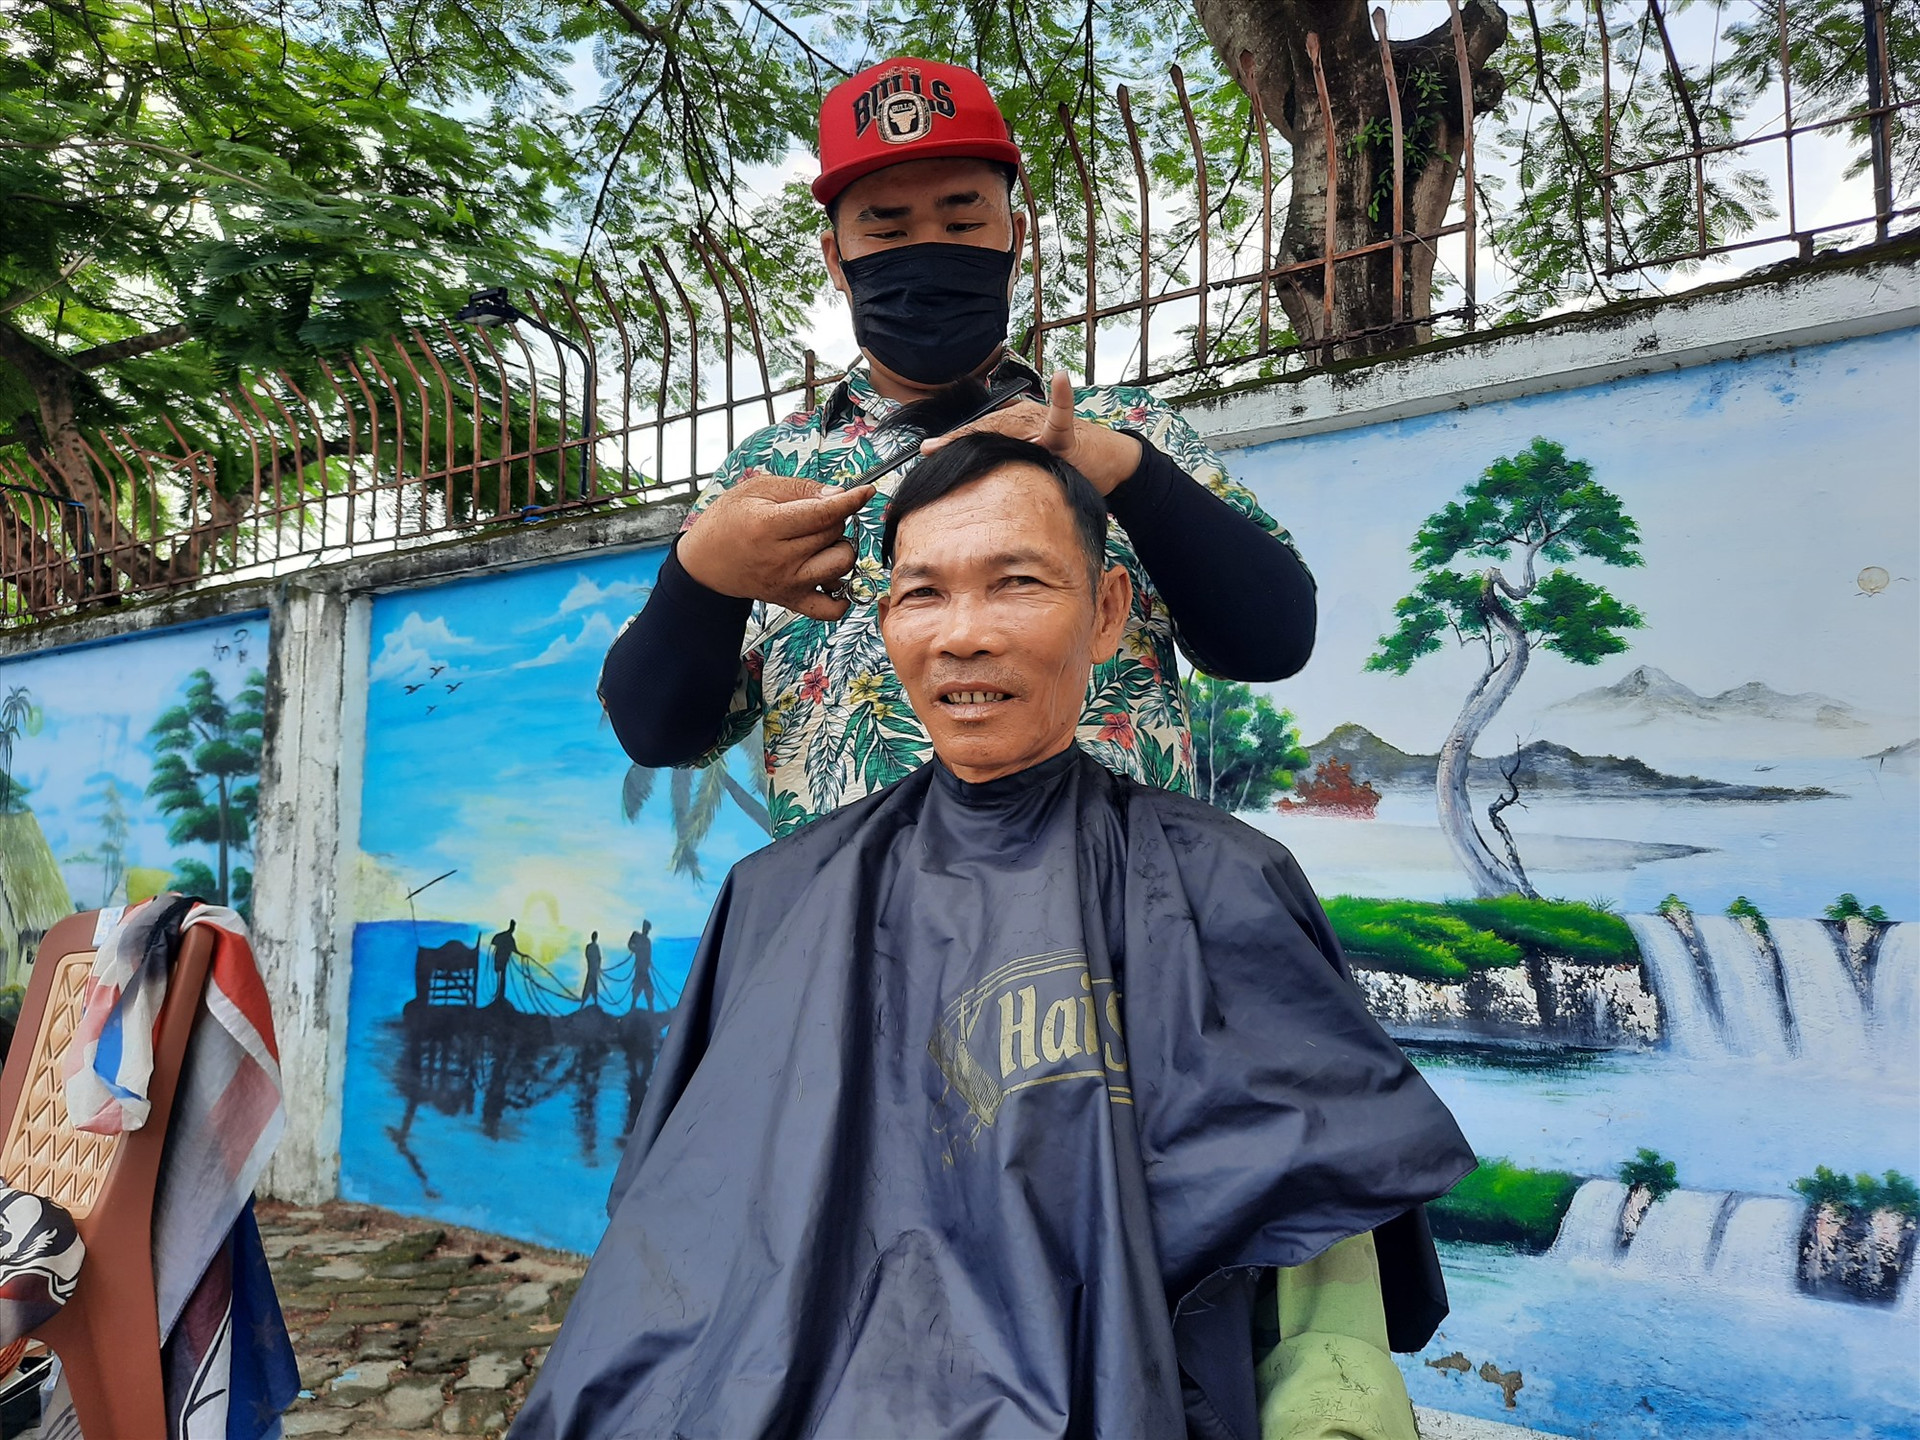 Chương trình cắt tóc miễn phí đã giúp lao động nghèo giảm bớt một khoản chi phí nhỏ trong sinh hoạt. Ảnh: Đ.ĐẠO